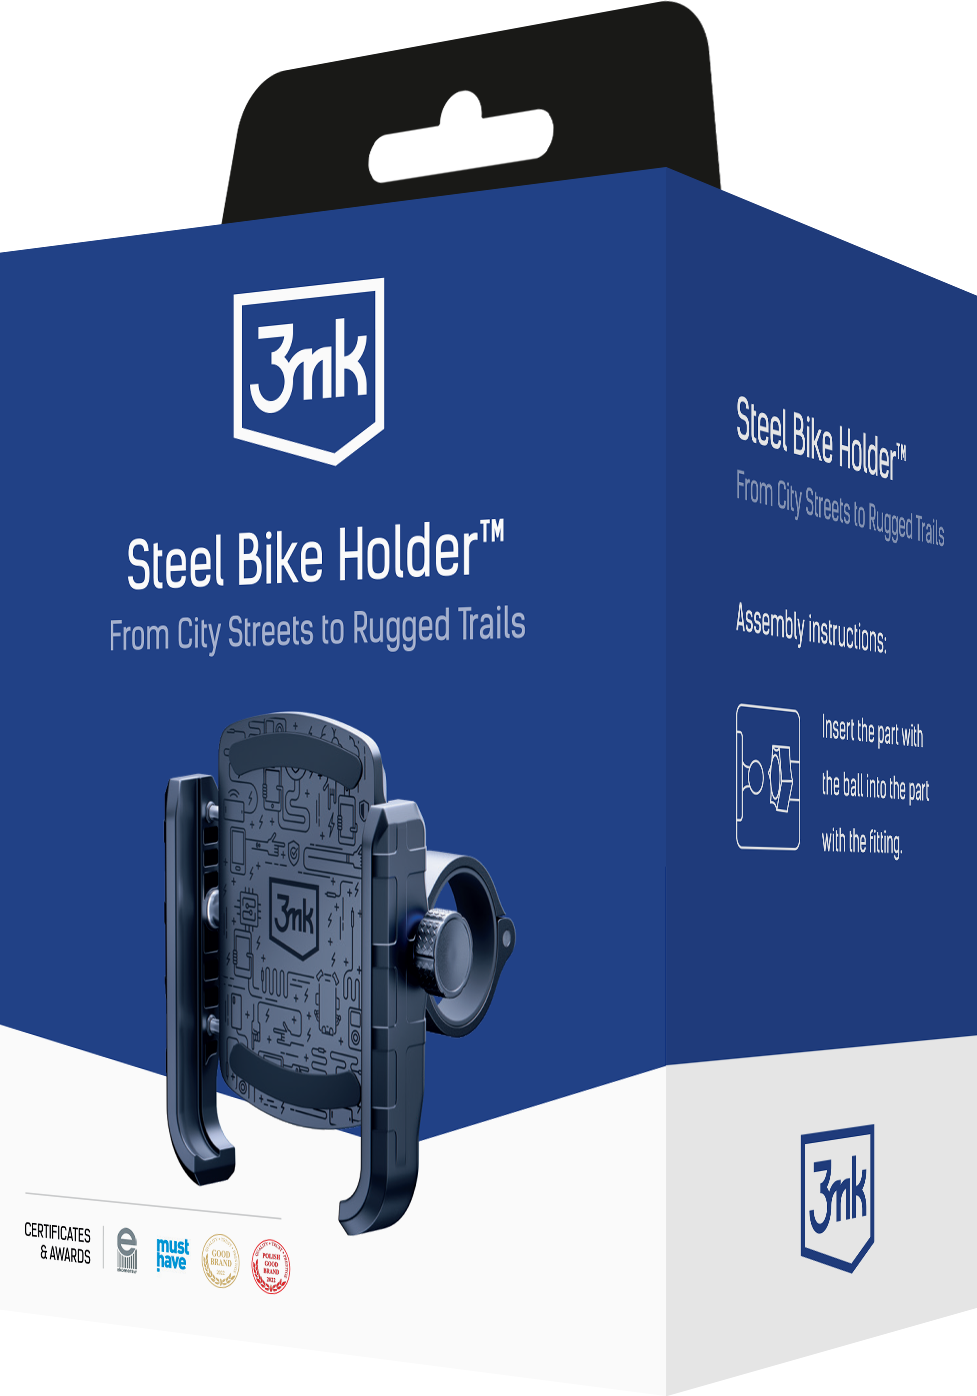 3mk-steel-bike-holder_-packshot-1